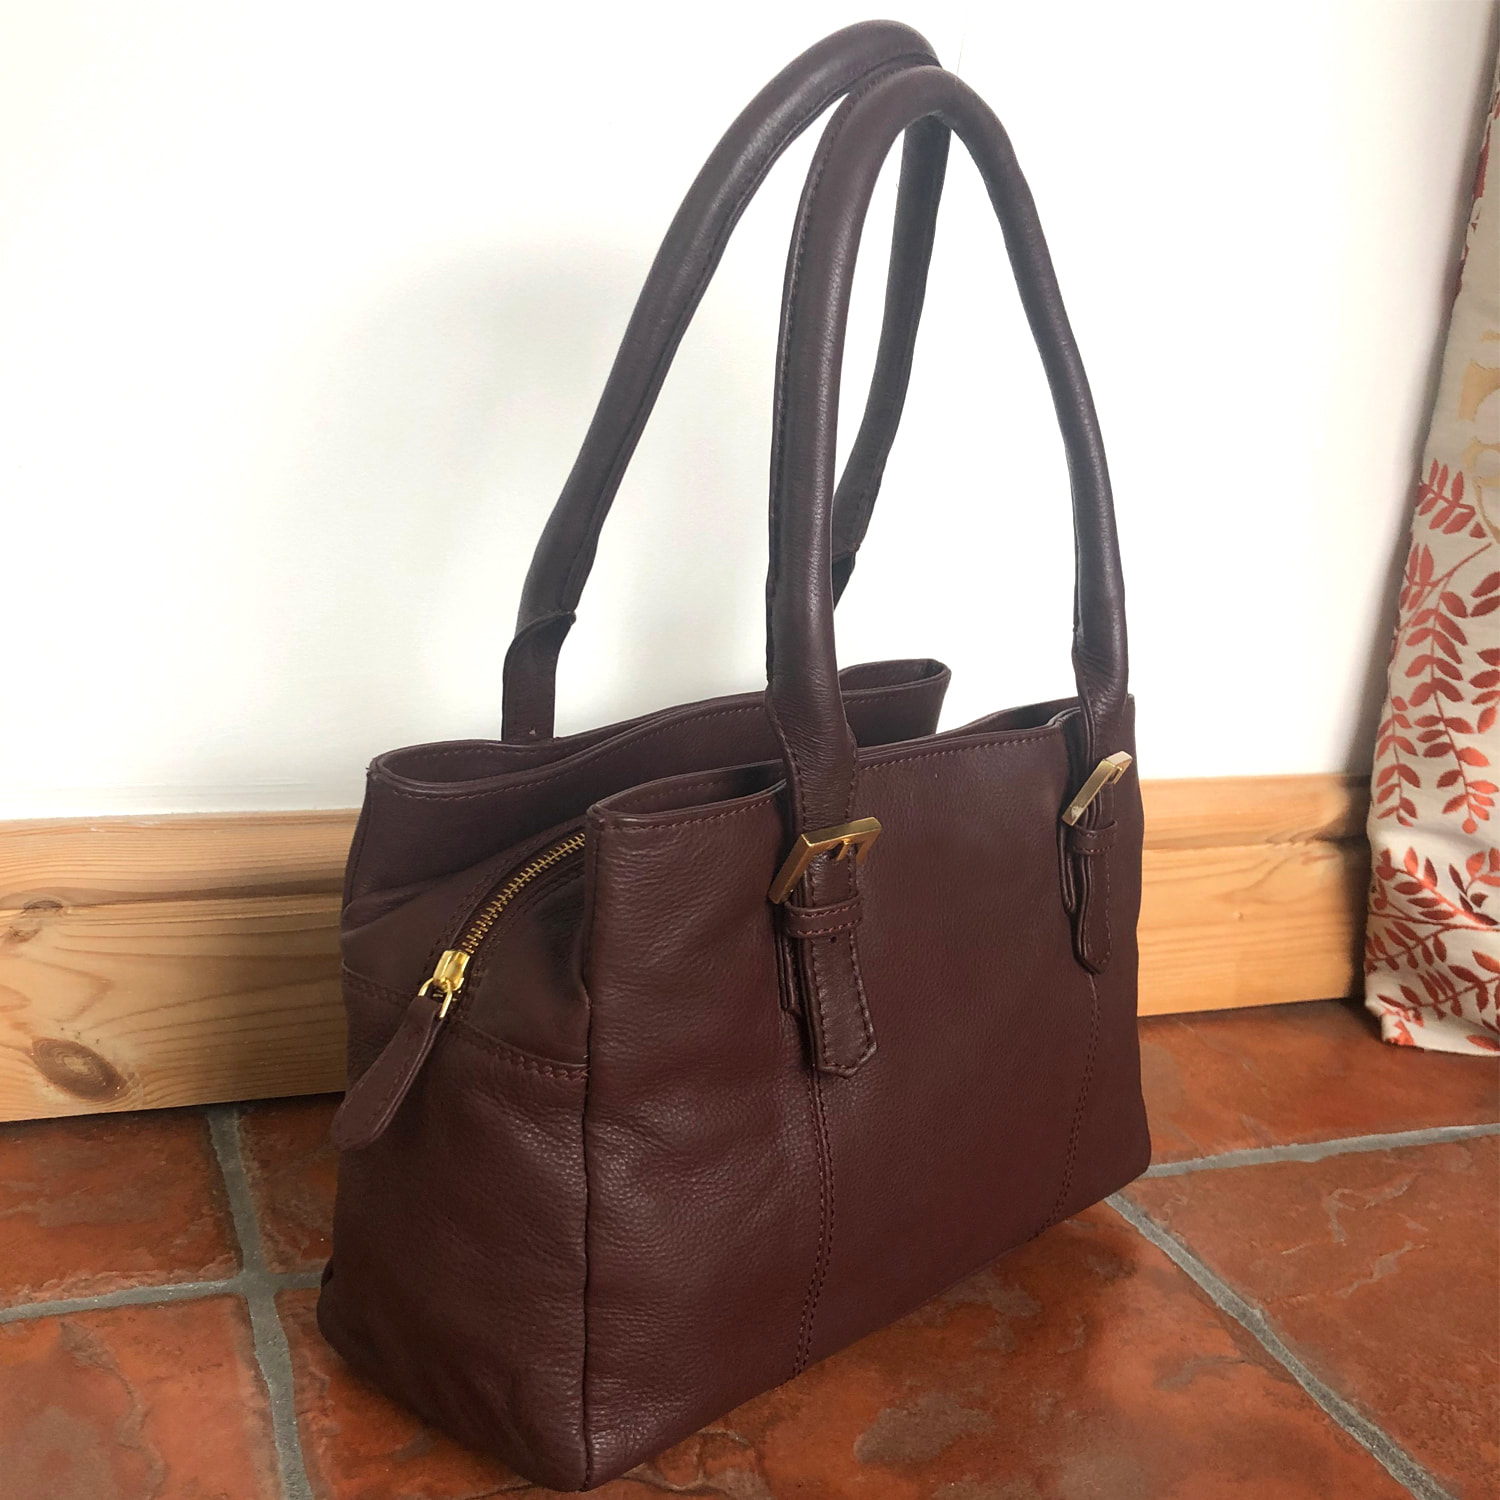 Brown Leather Handbag, Tote Bag